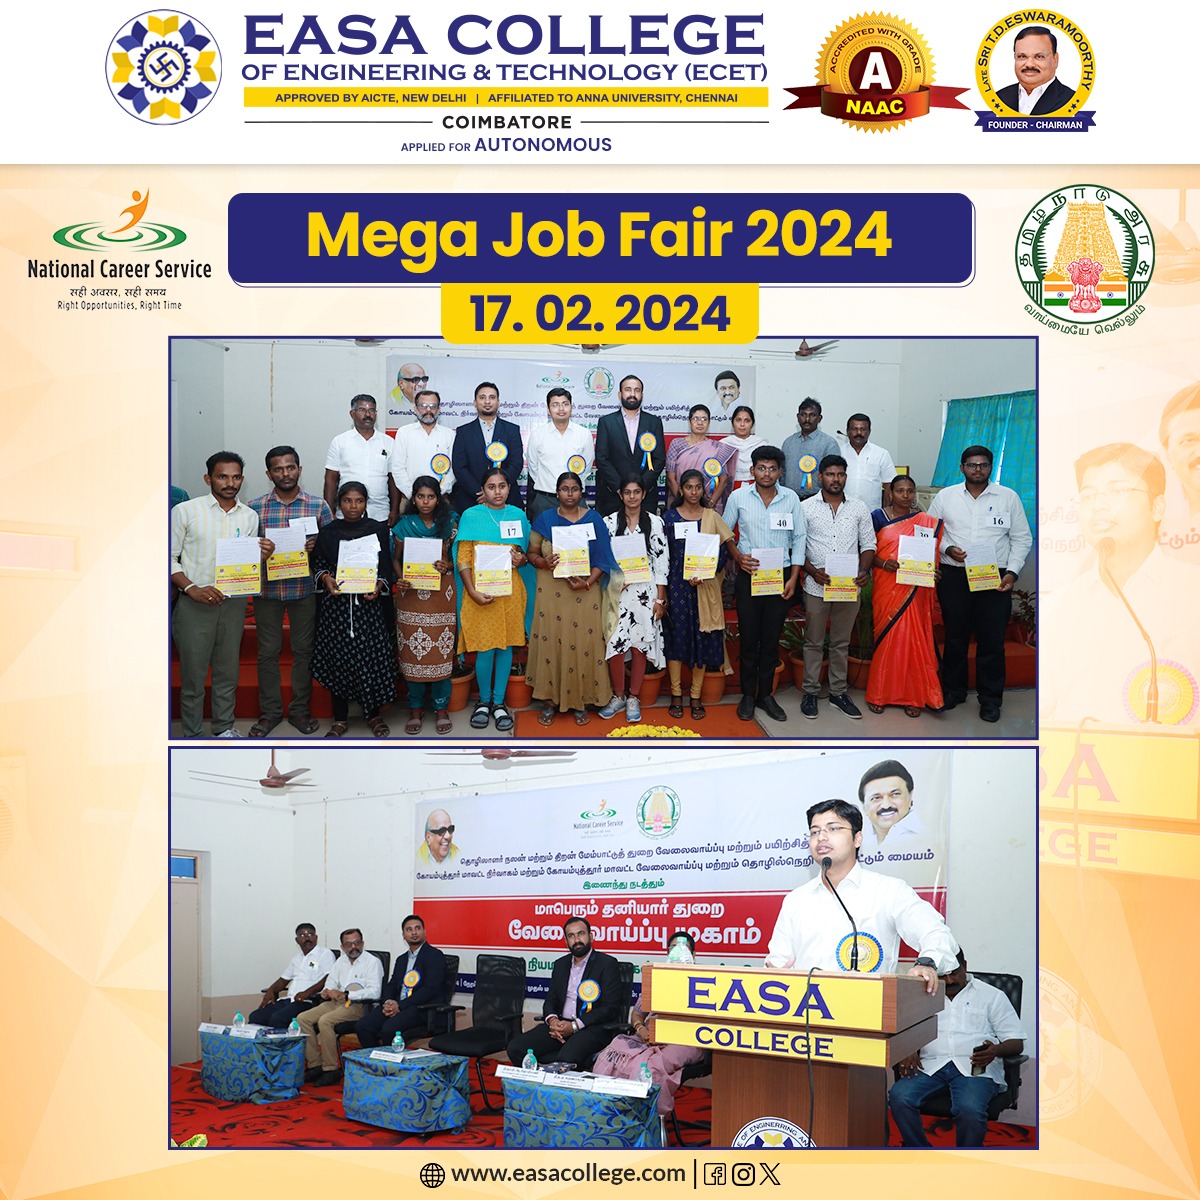 Successful Mega Job Fair 2024